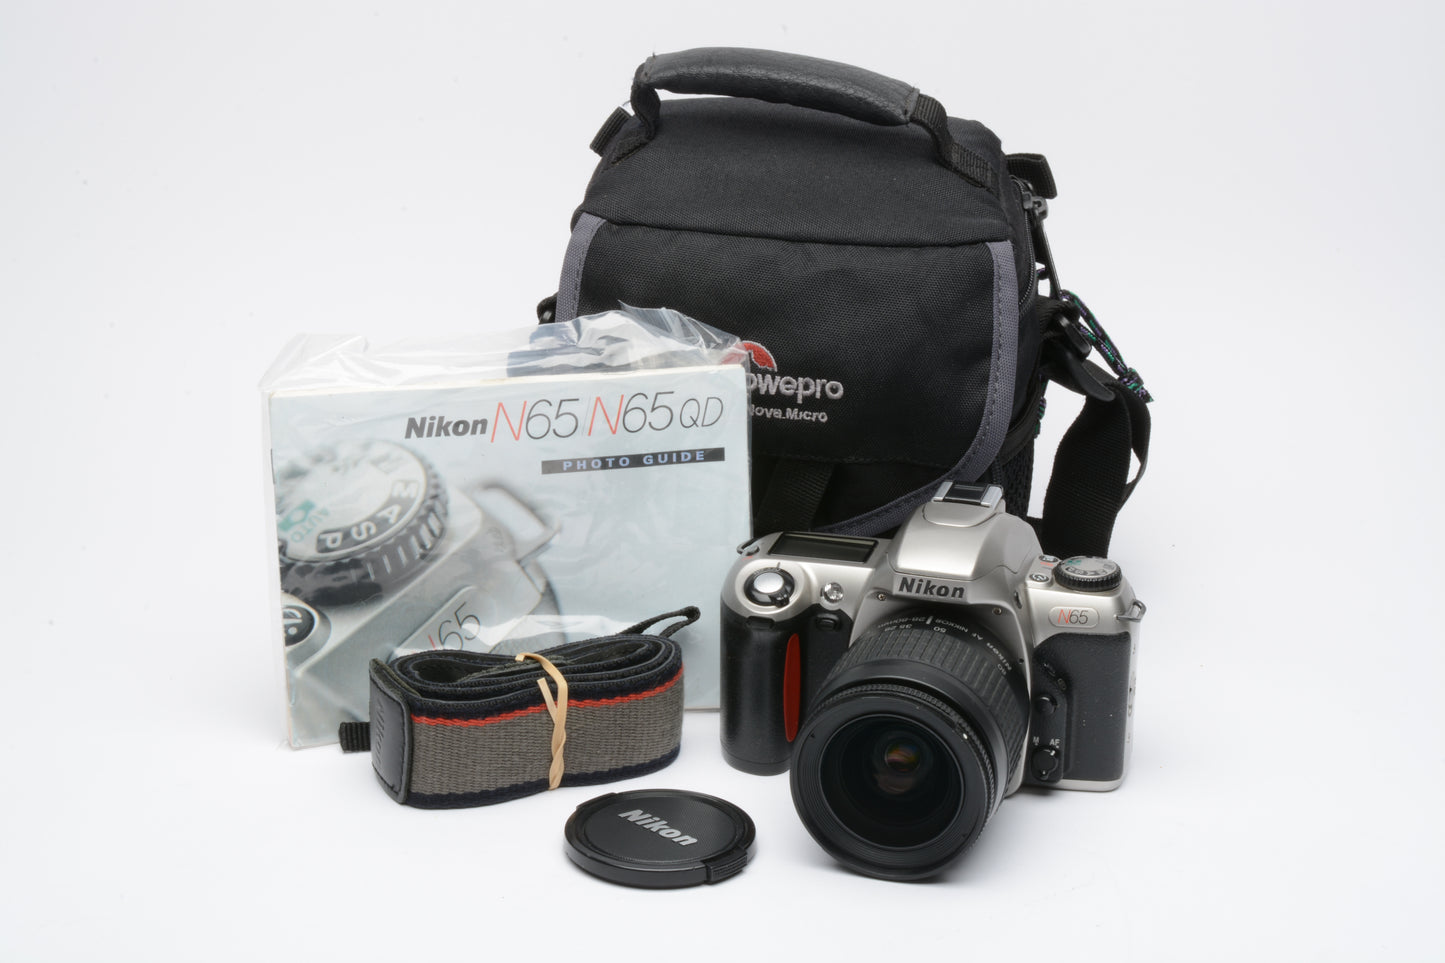 Nikon N65 35mm SLR w/AF 28-80mm zoom, Lowepro case, manuals, tested, great